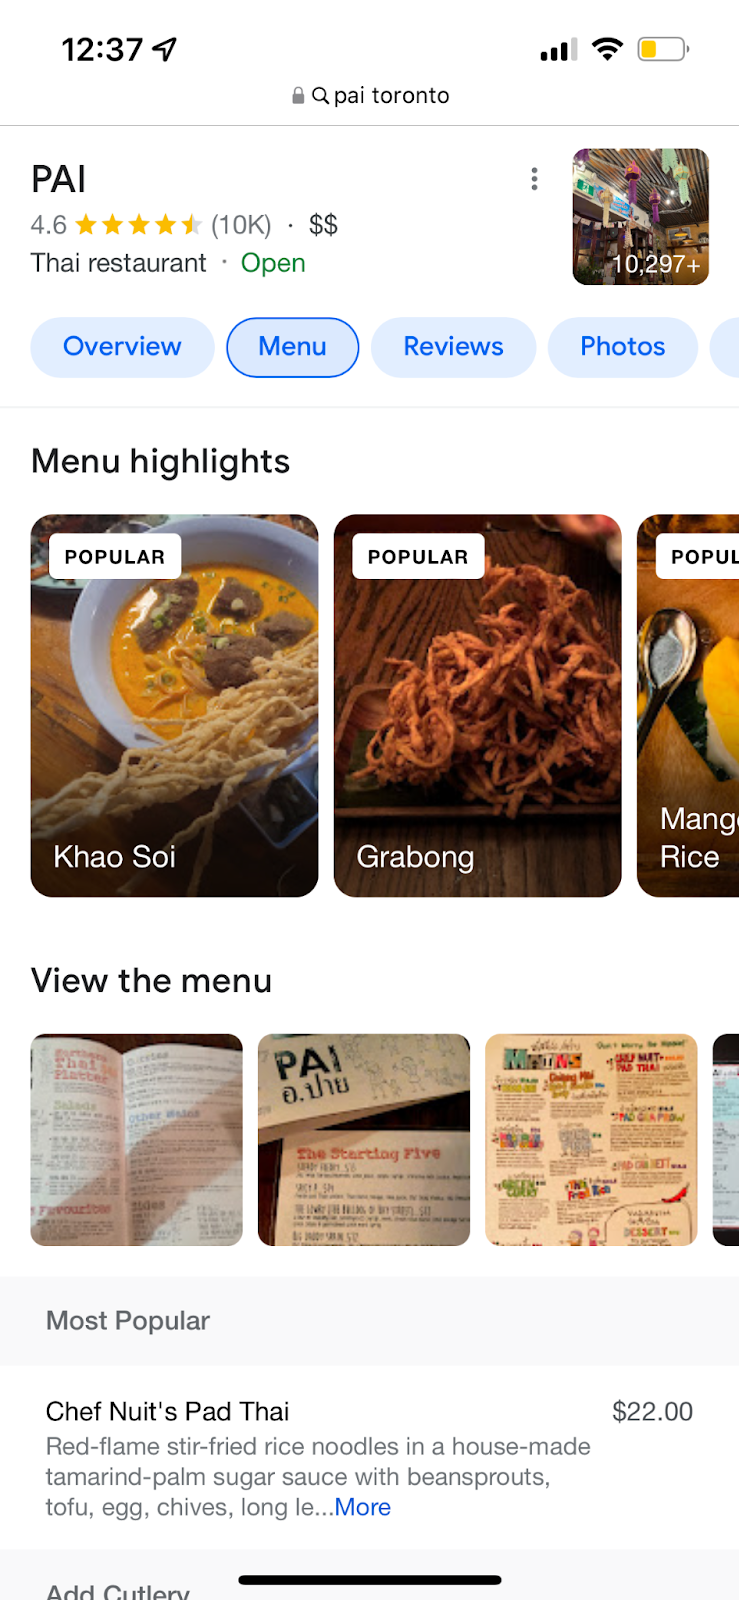 Pai's menu disalayed on Google SERP